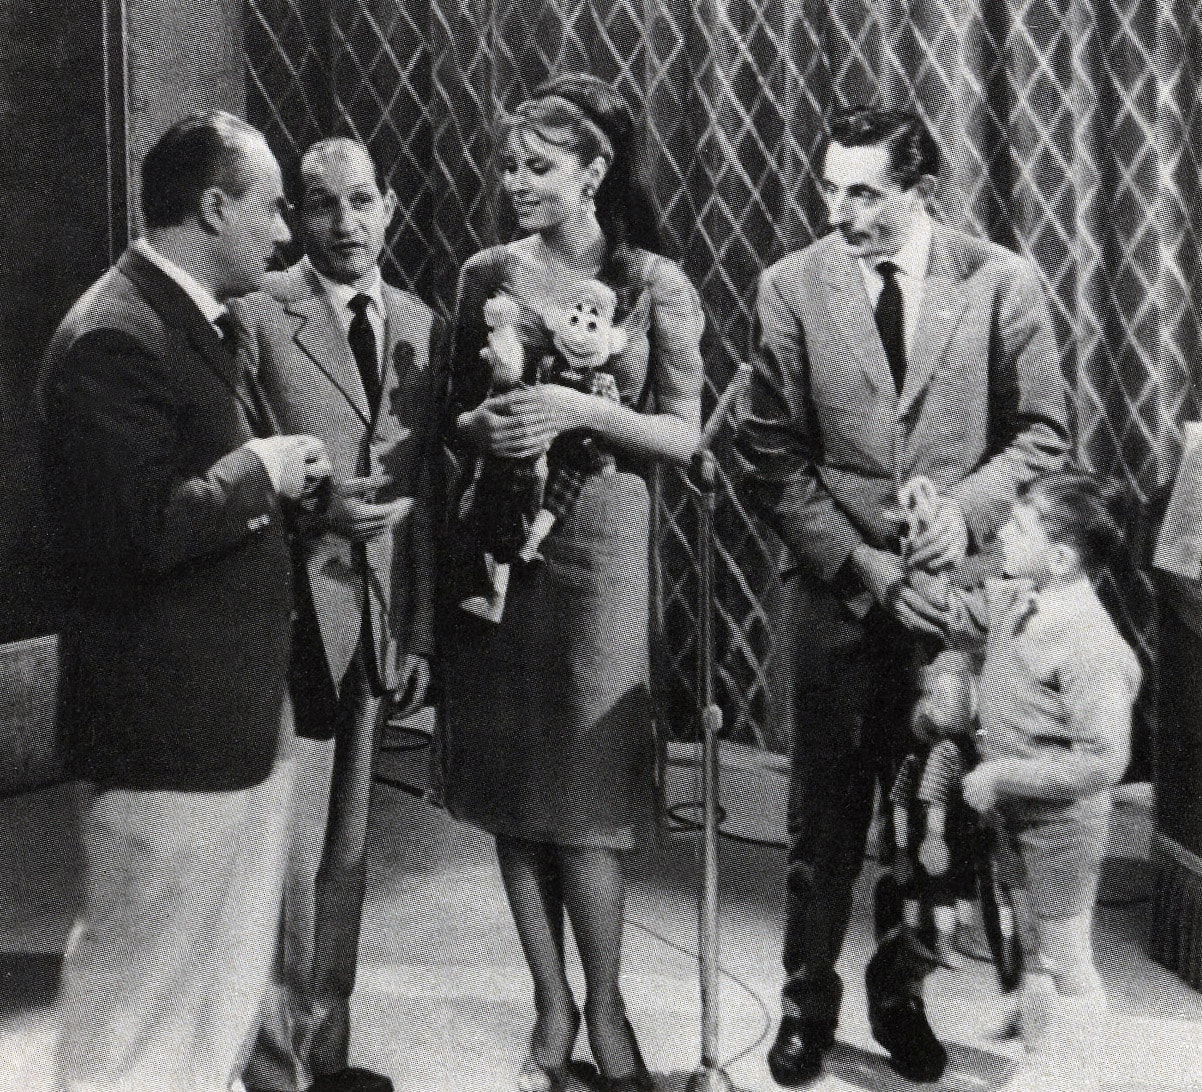 Insieme a Gino Bartali e Mario Riva, durante la partecipazione al programma televisivo de Il Musichiere, nel 1959